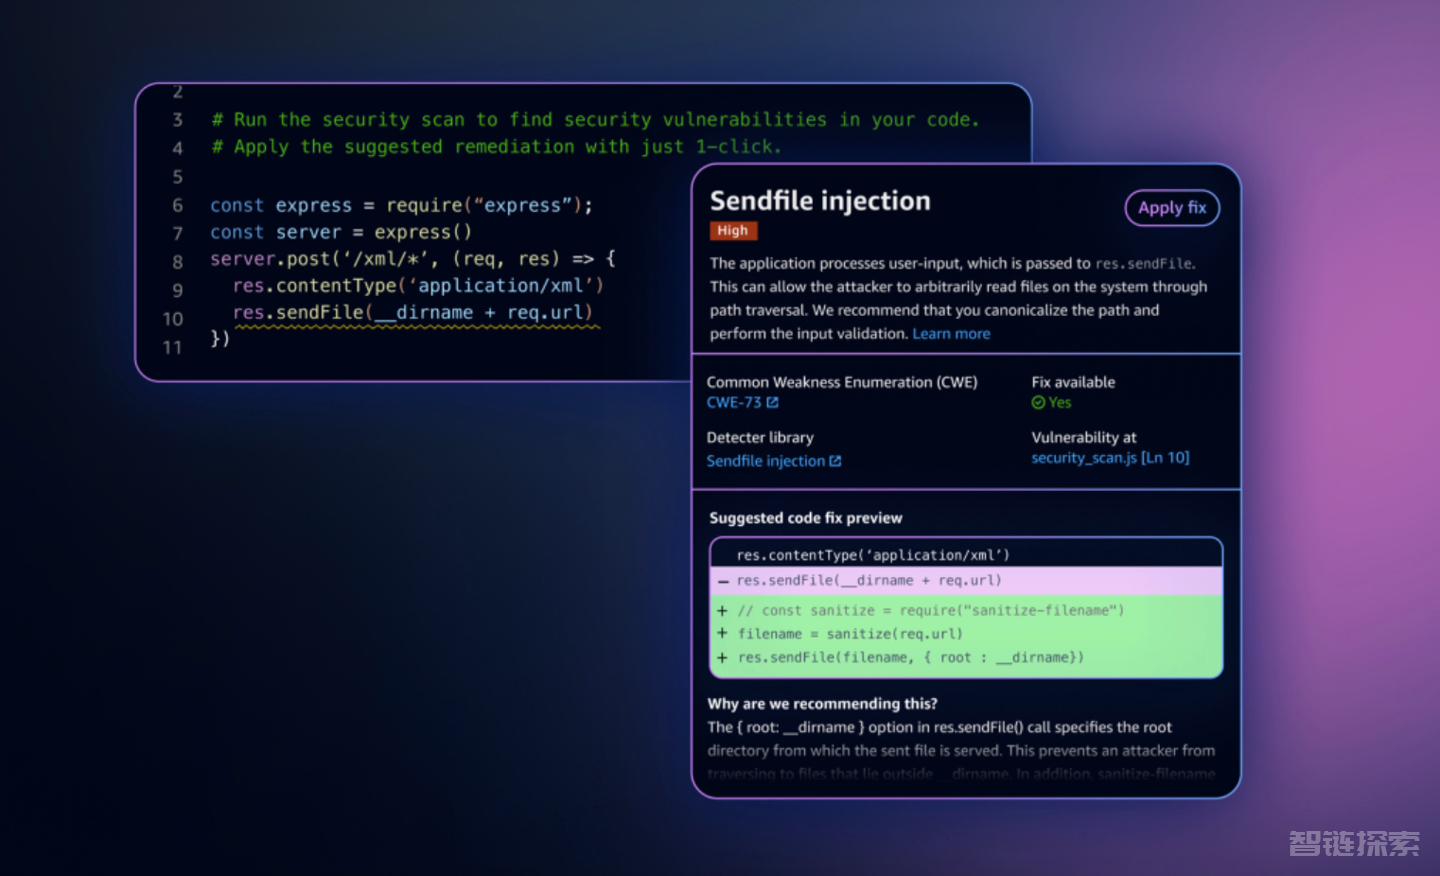 亚马逊推出 AI 编程工具 CodeWhisperer 正式版，可检测代码中存在的漏洞